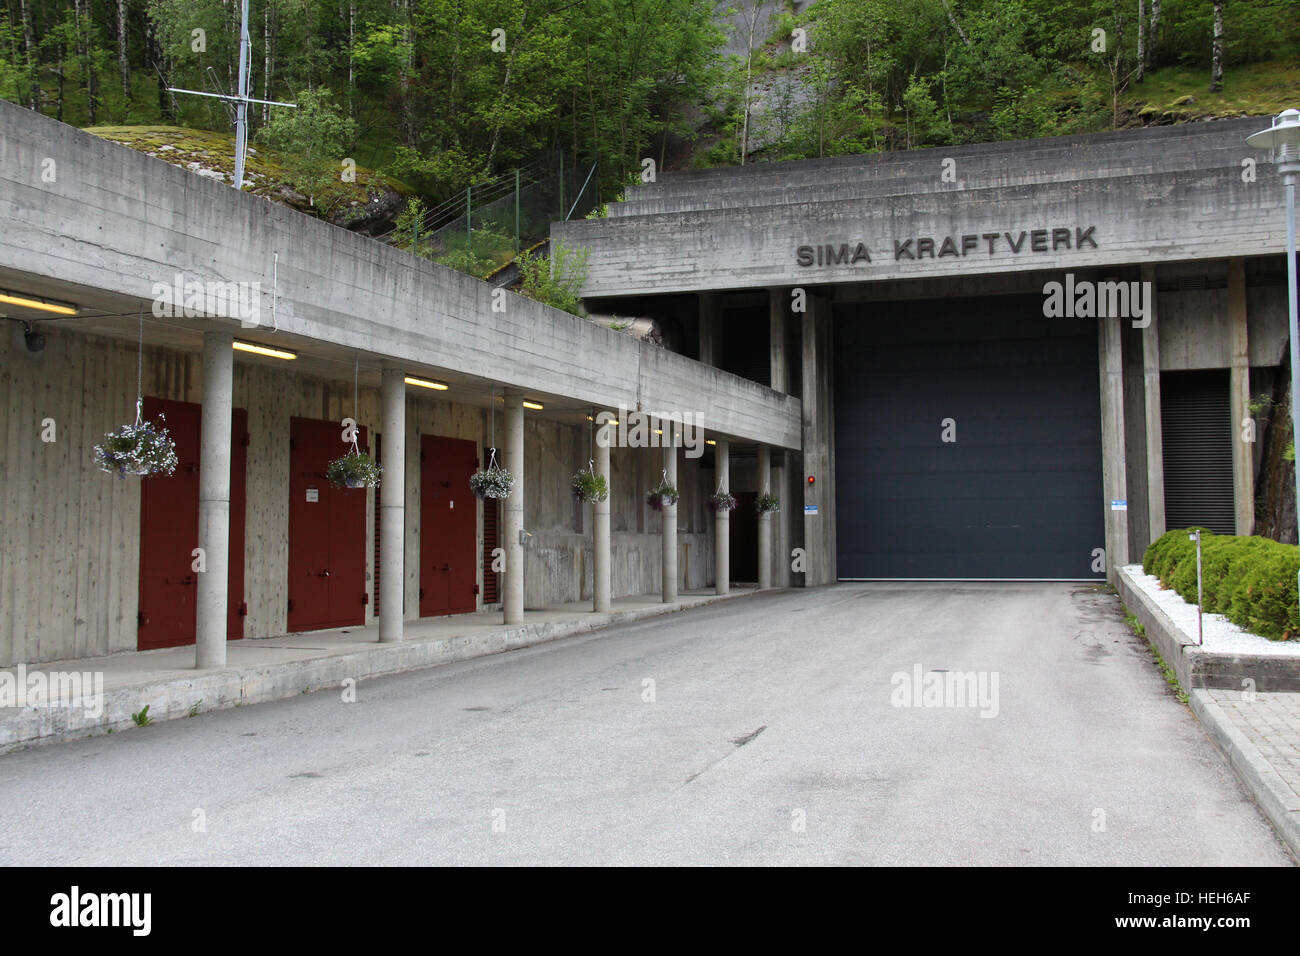 The entrance of Norwegian hydropower plant 'Sima Kraftwerk' in Eidfjord, Norway Stock Photo